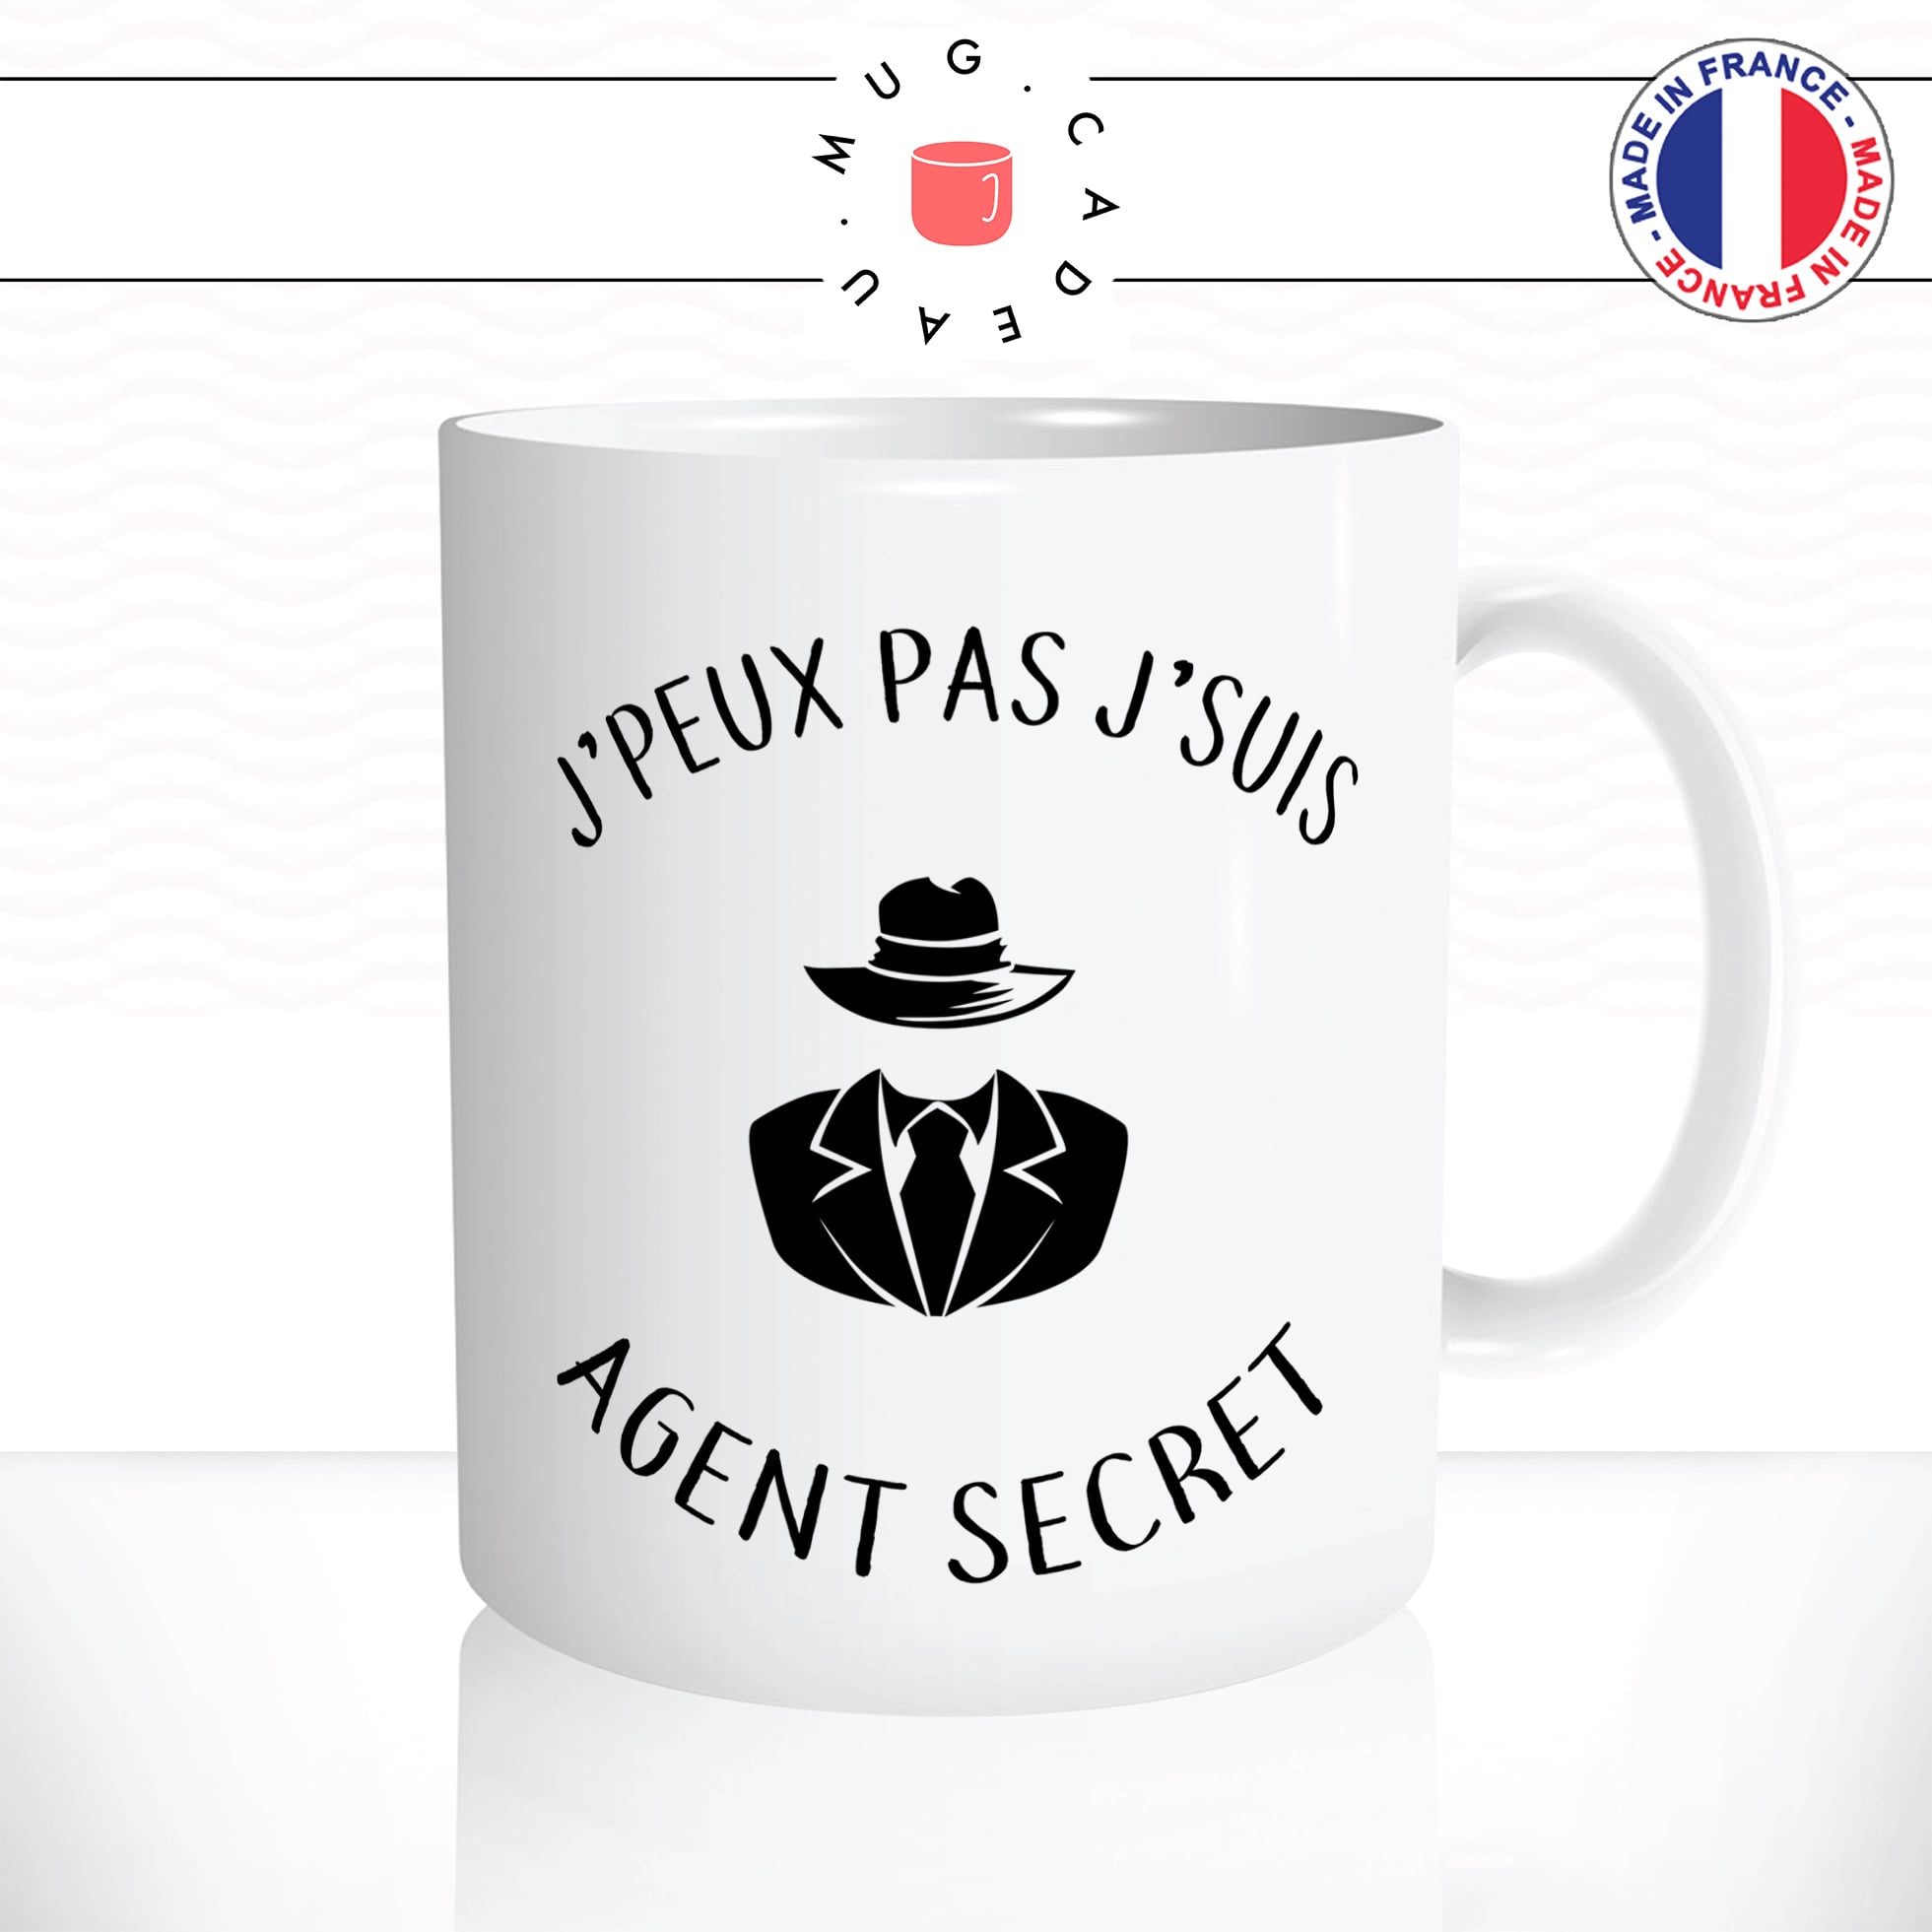 mug-tasse-jpeux-pas-jsuis-agent-secret-oss117-bond-excuse-pourrie-fun-humour-original-mugs-tasses-café-thé-idée-cadeau-personnalisée2-min